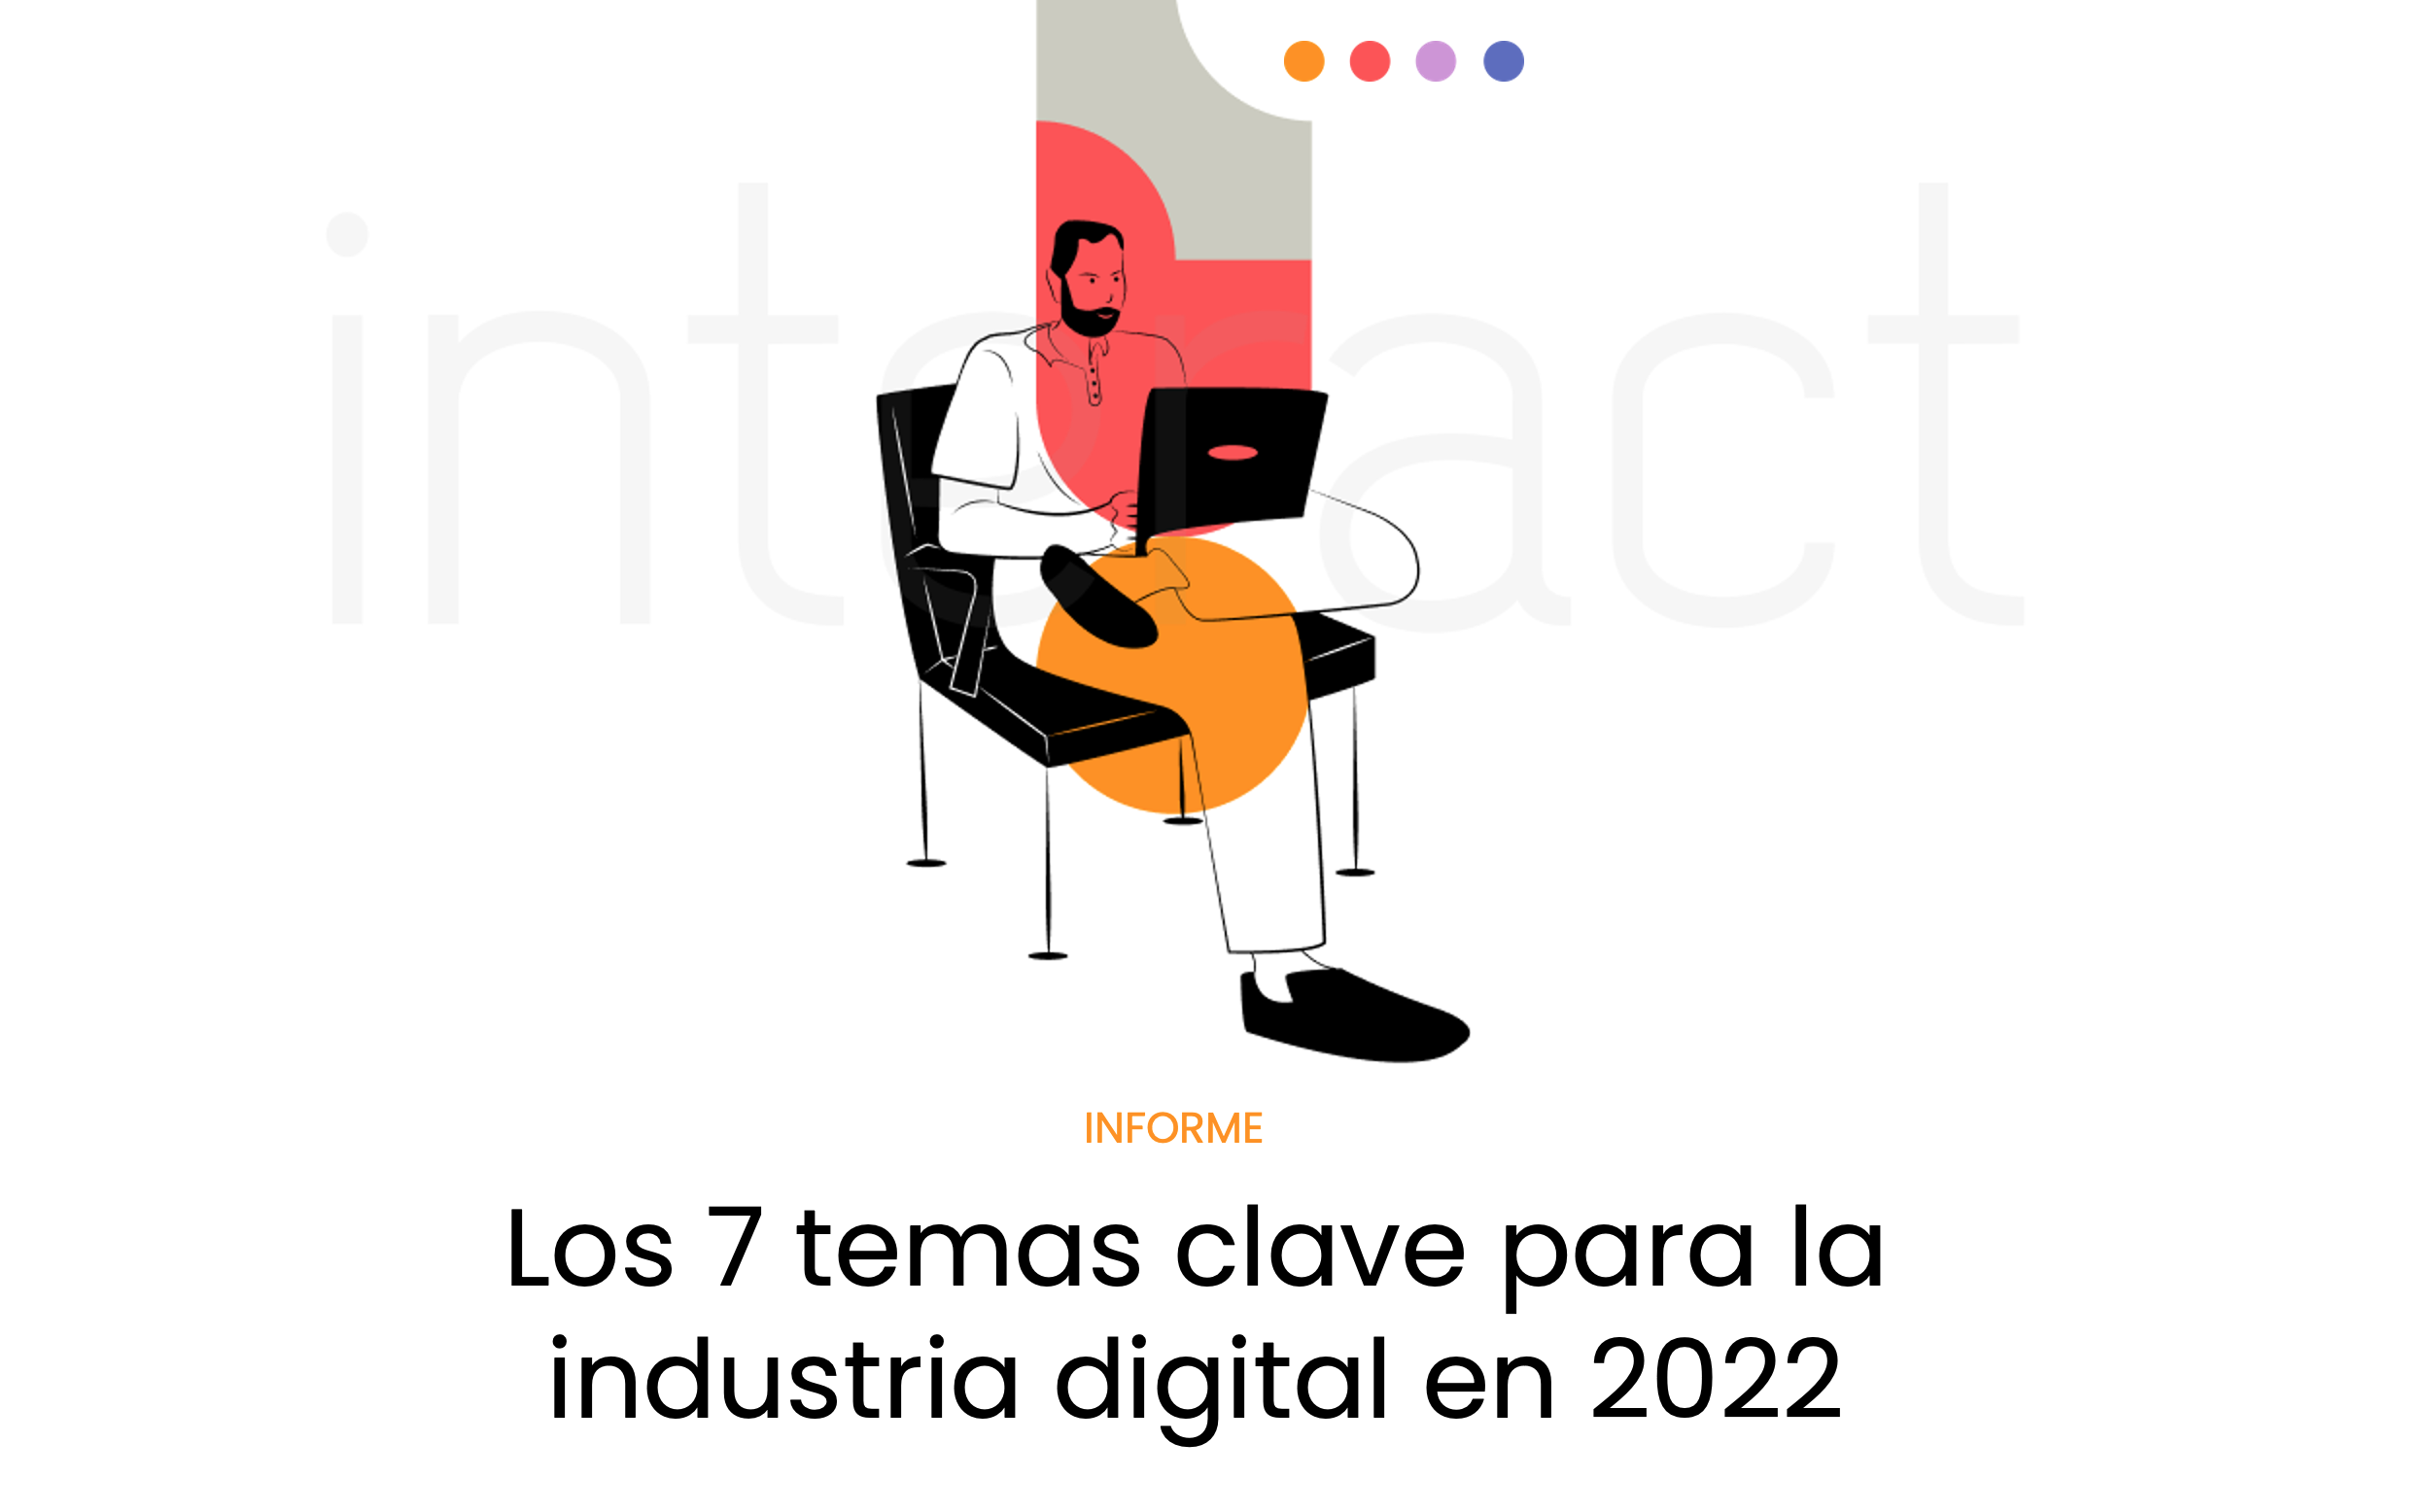 Los 7 temas clave para la industria digital en 2022